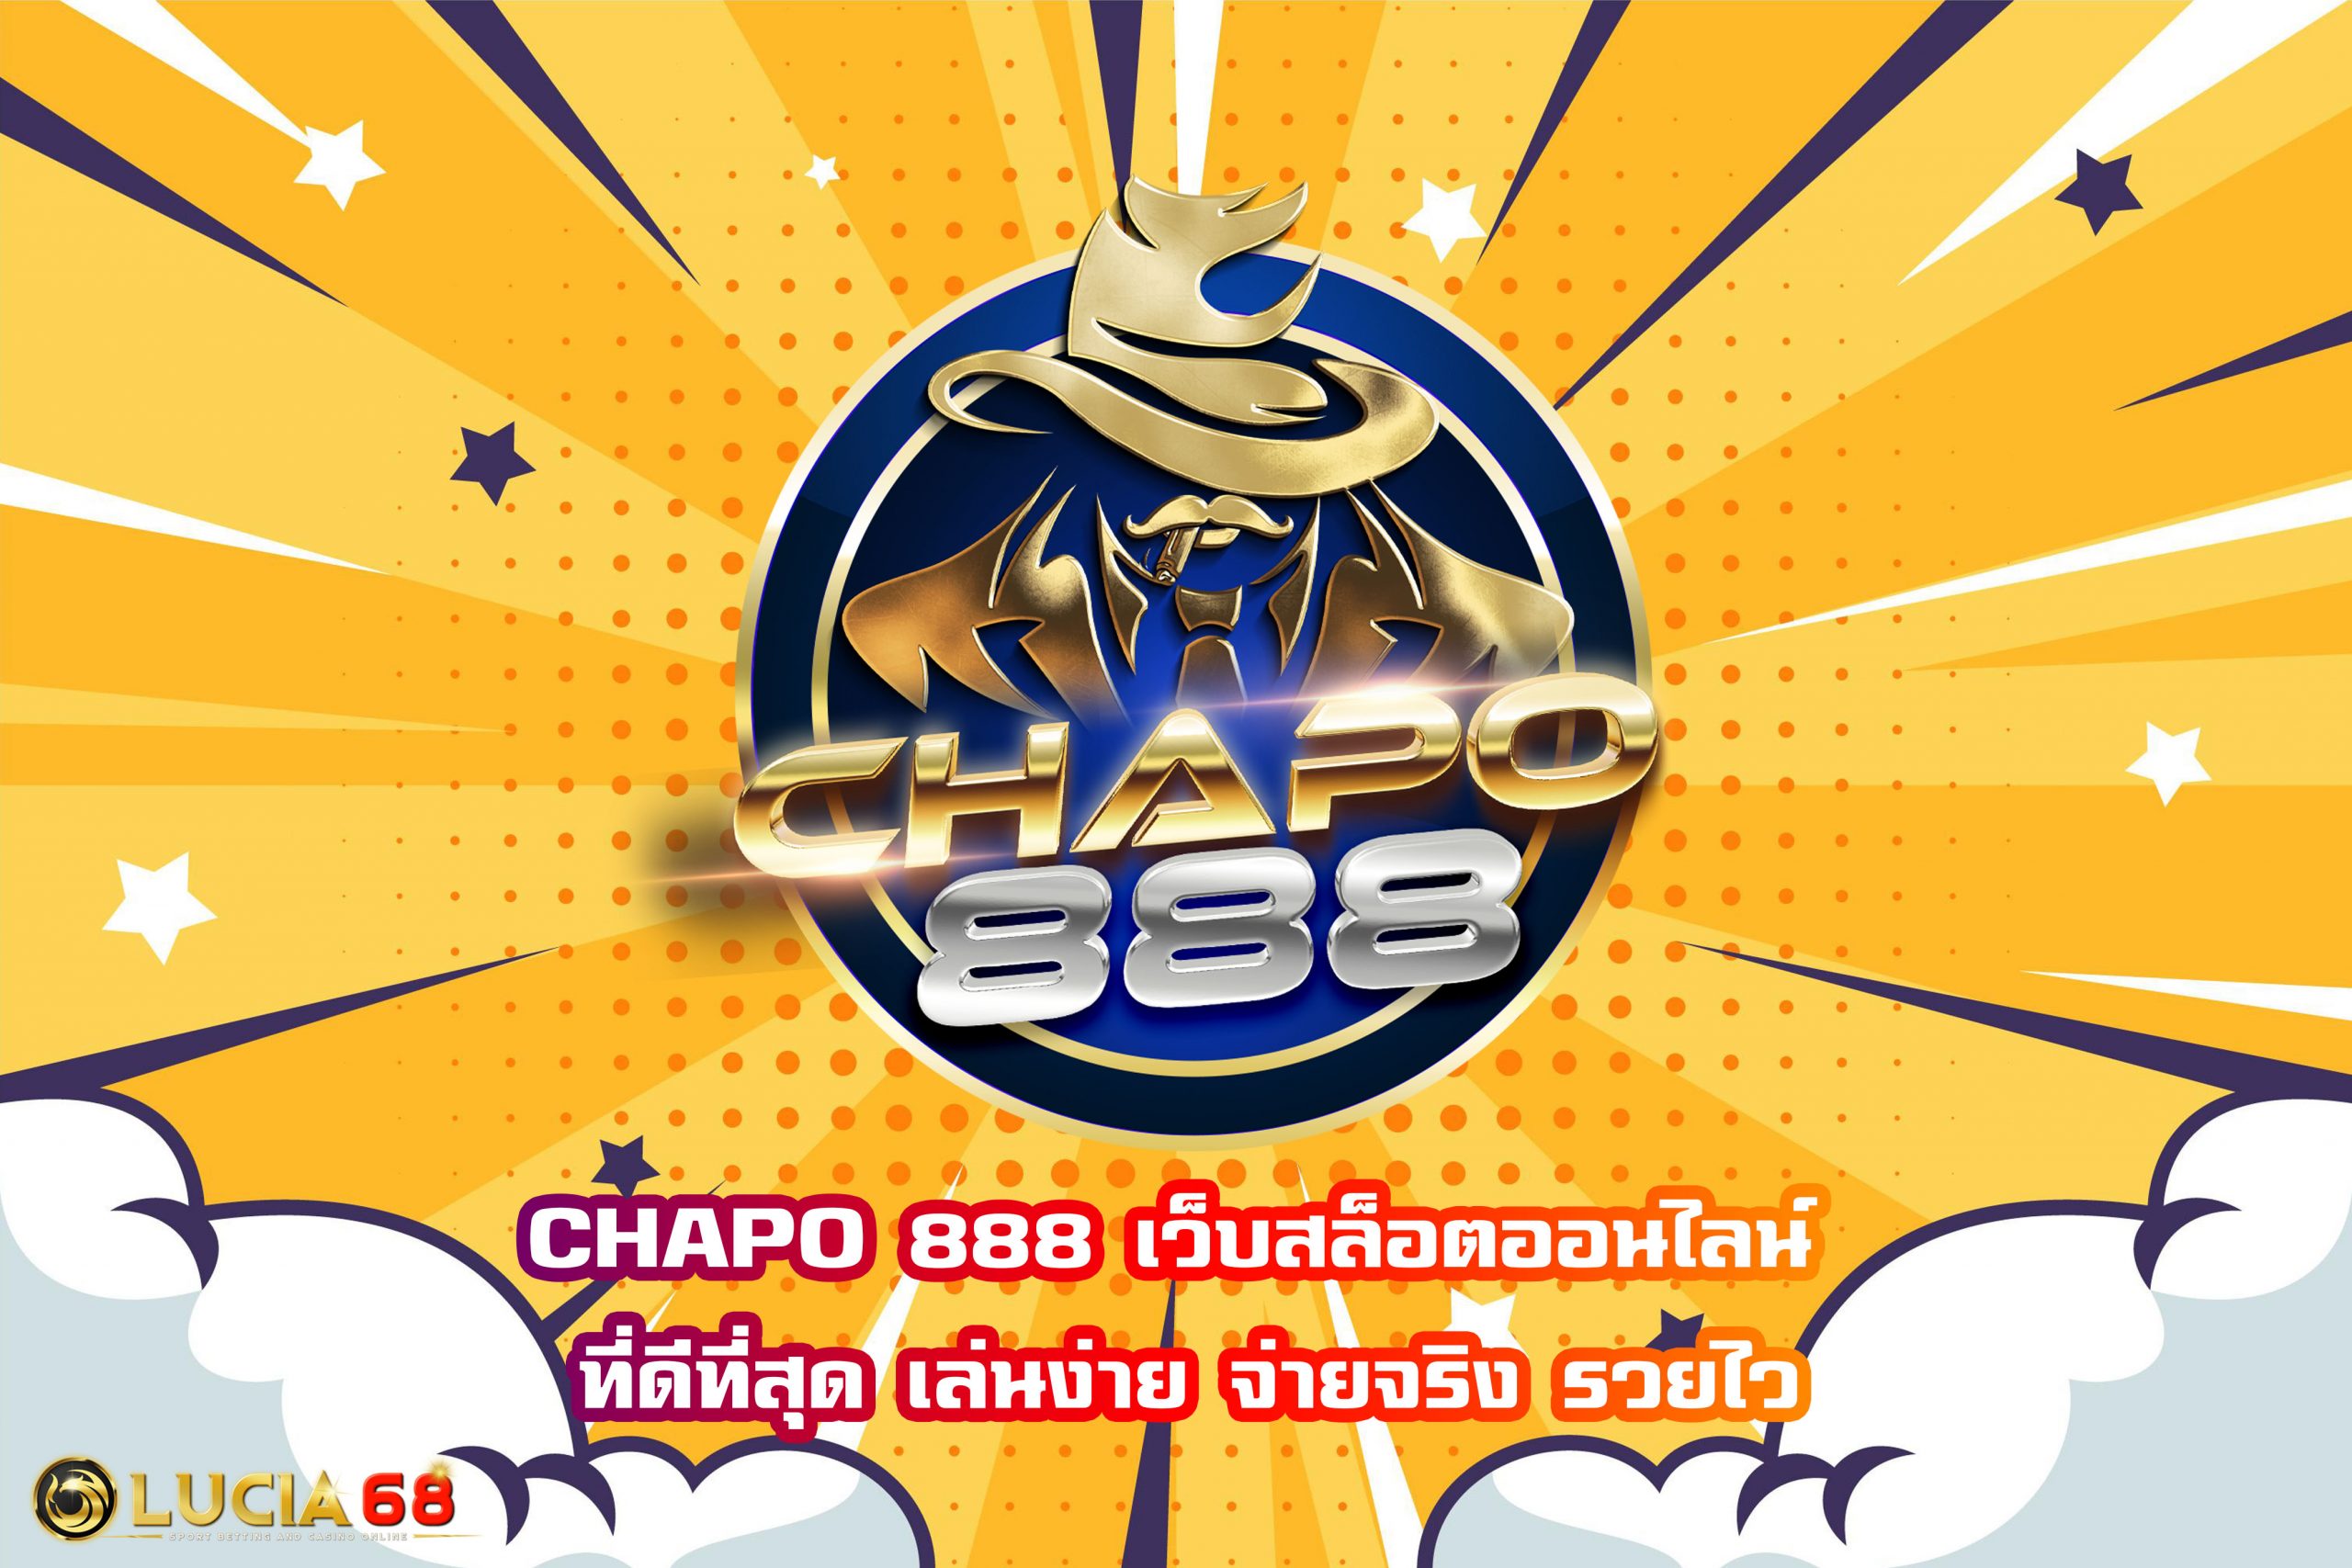 CHAPO 888 เว็บสล็อตออนไลน์ ที่ดีที่สุด เล่นง่าย จ่ายจริง รวยไว